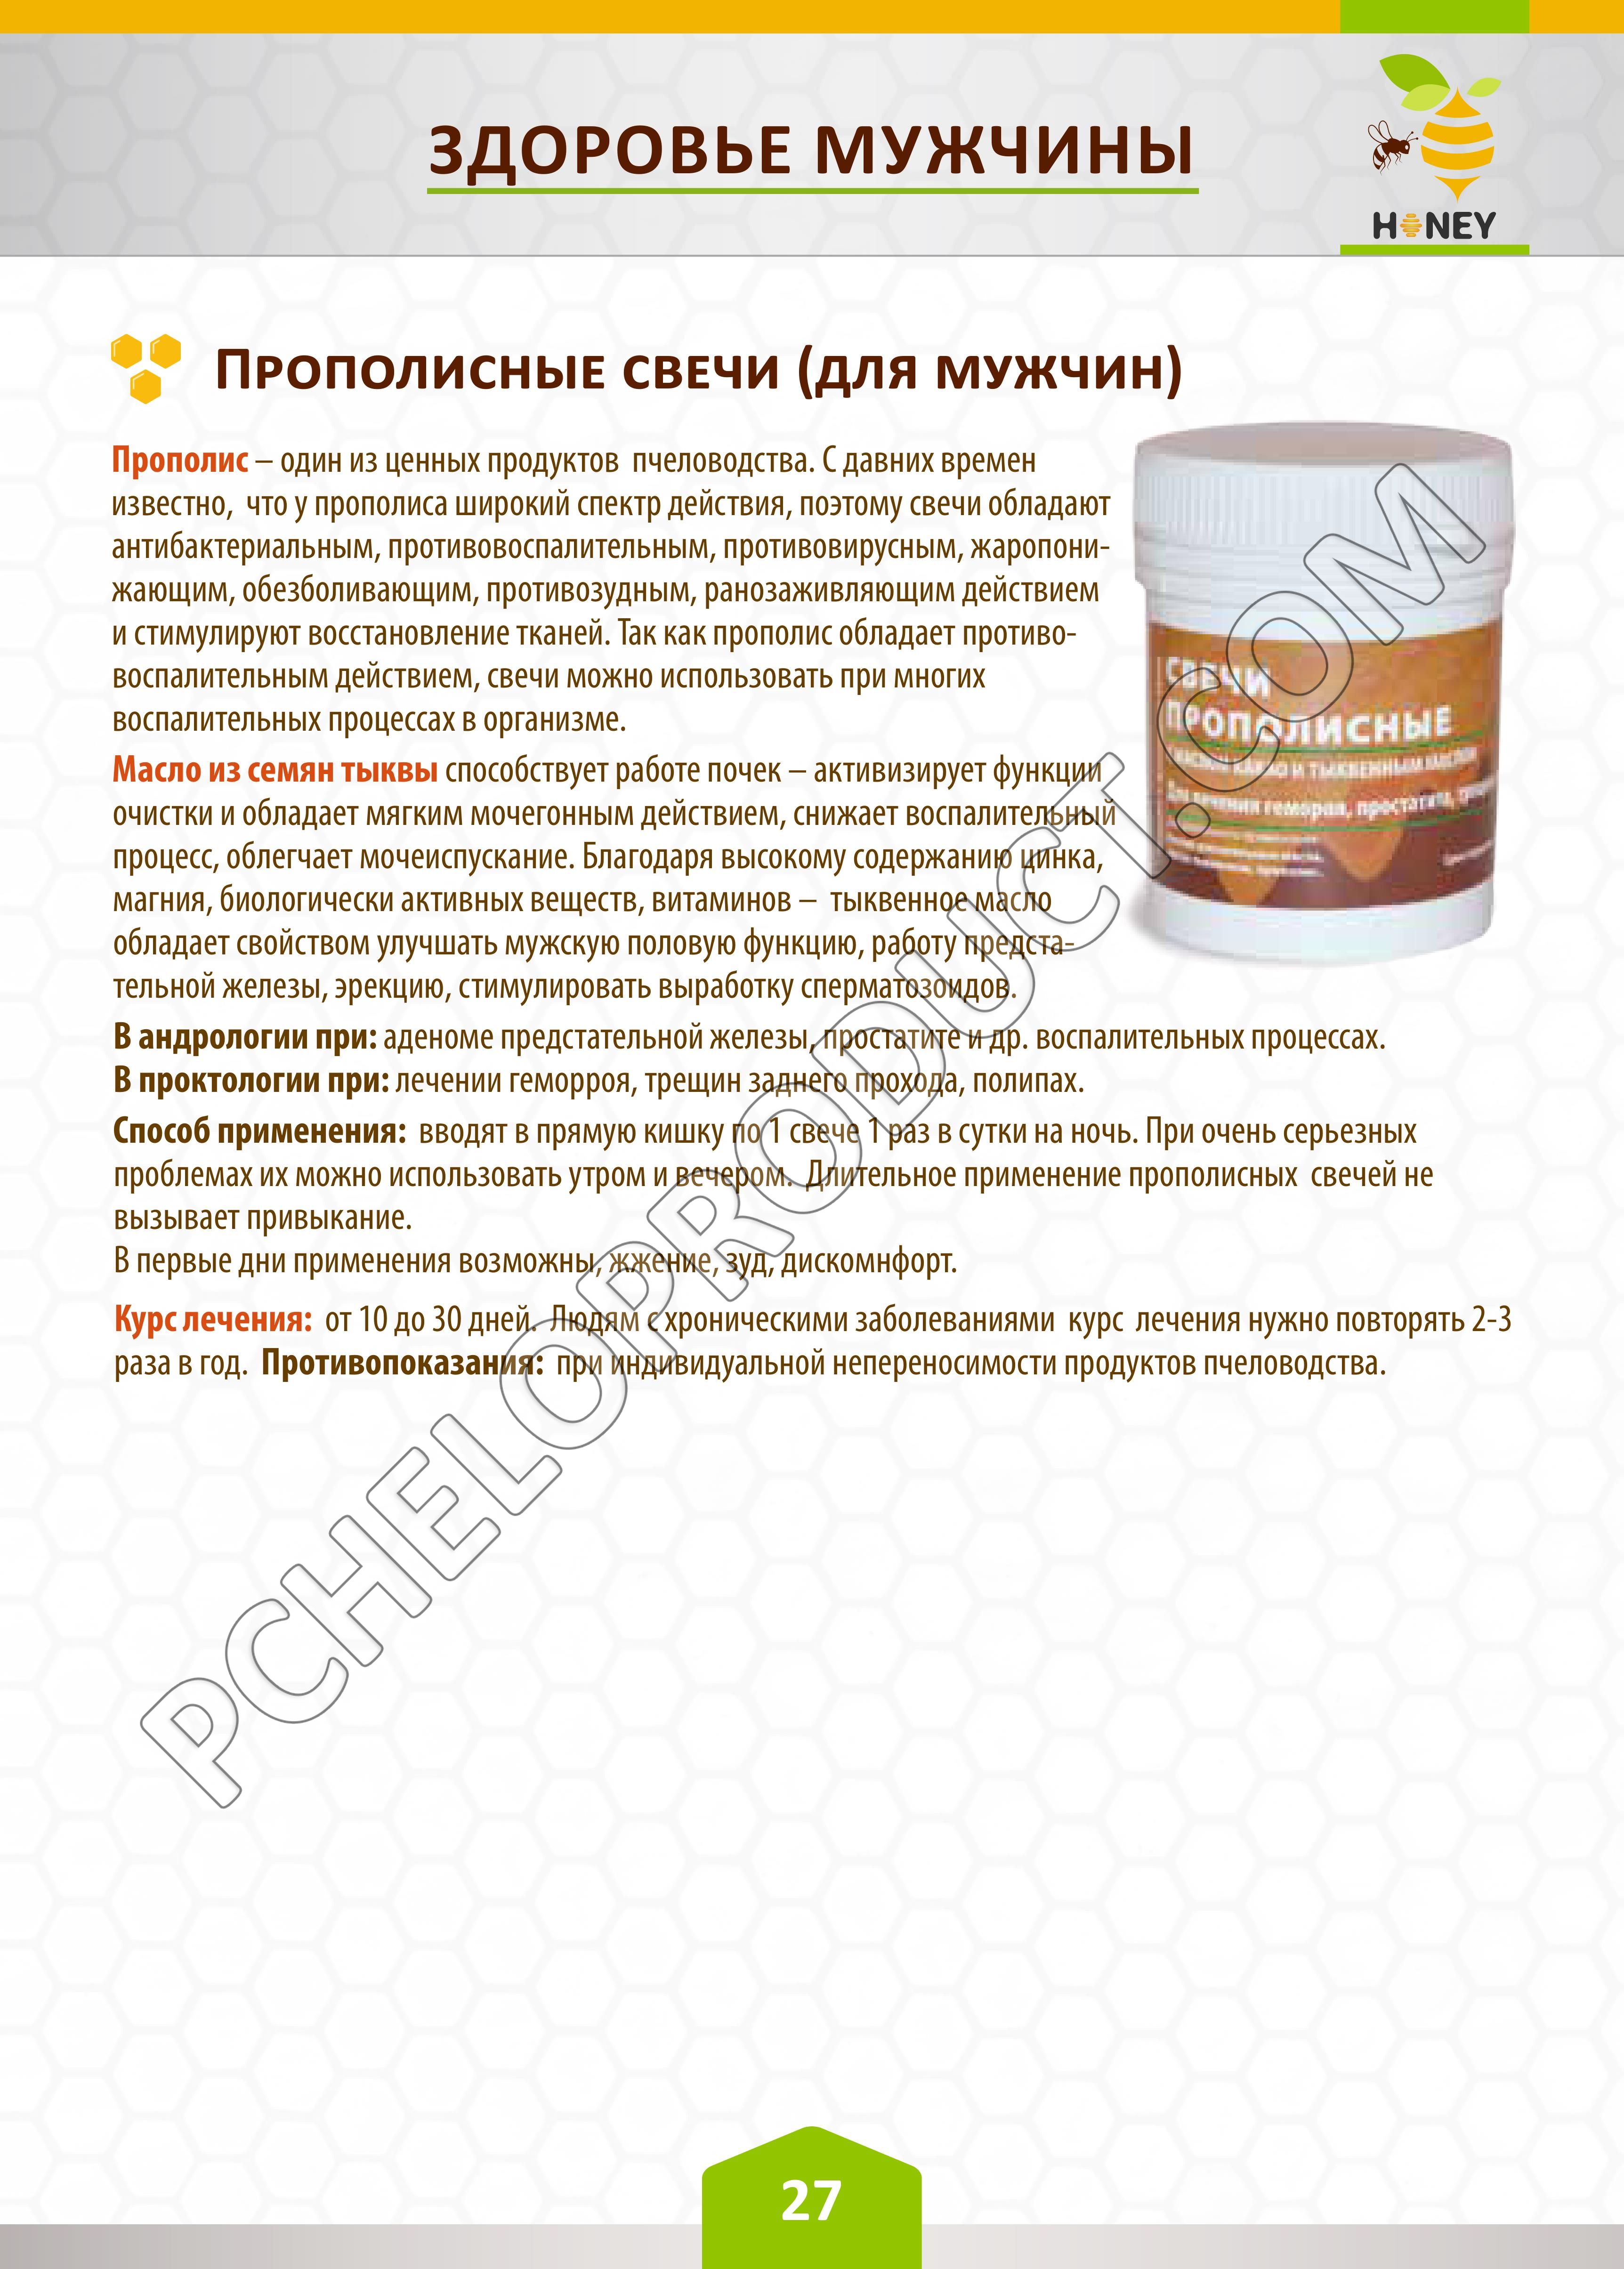 Прополісні свічки (для чоловіків), 30 шт - Бджолопродукт -- Health honey